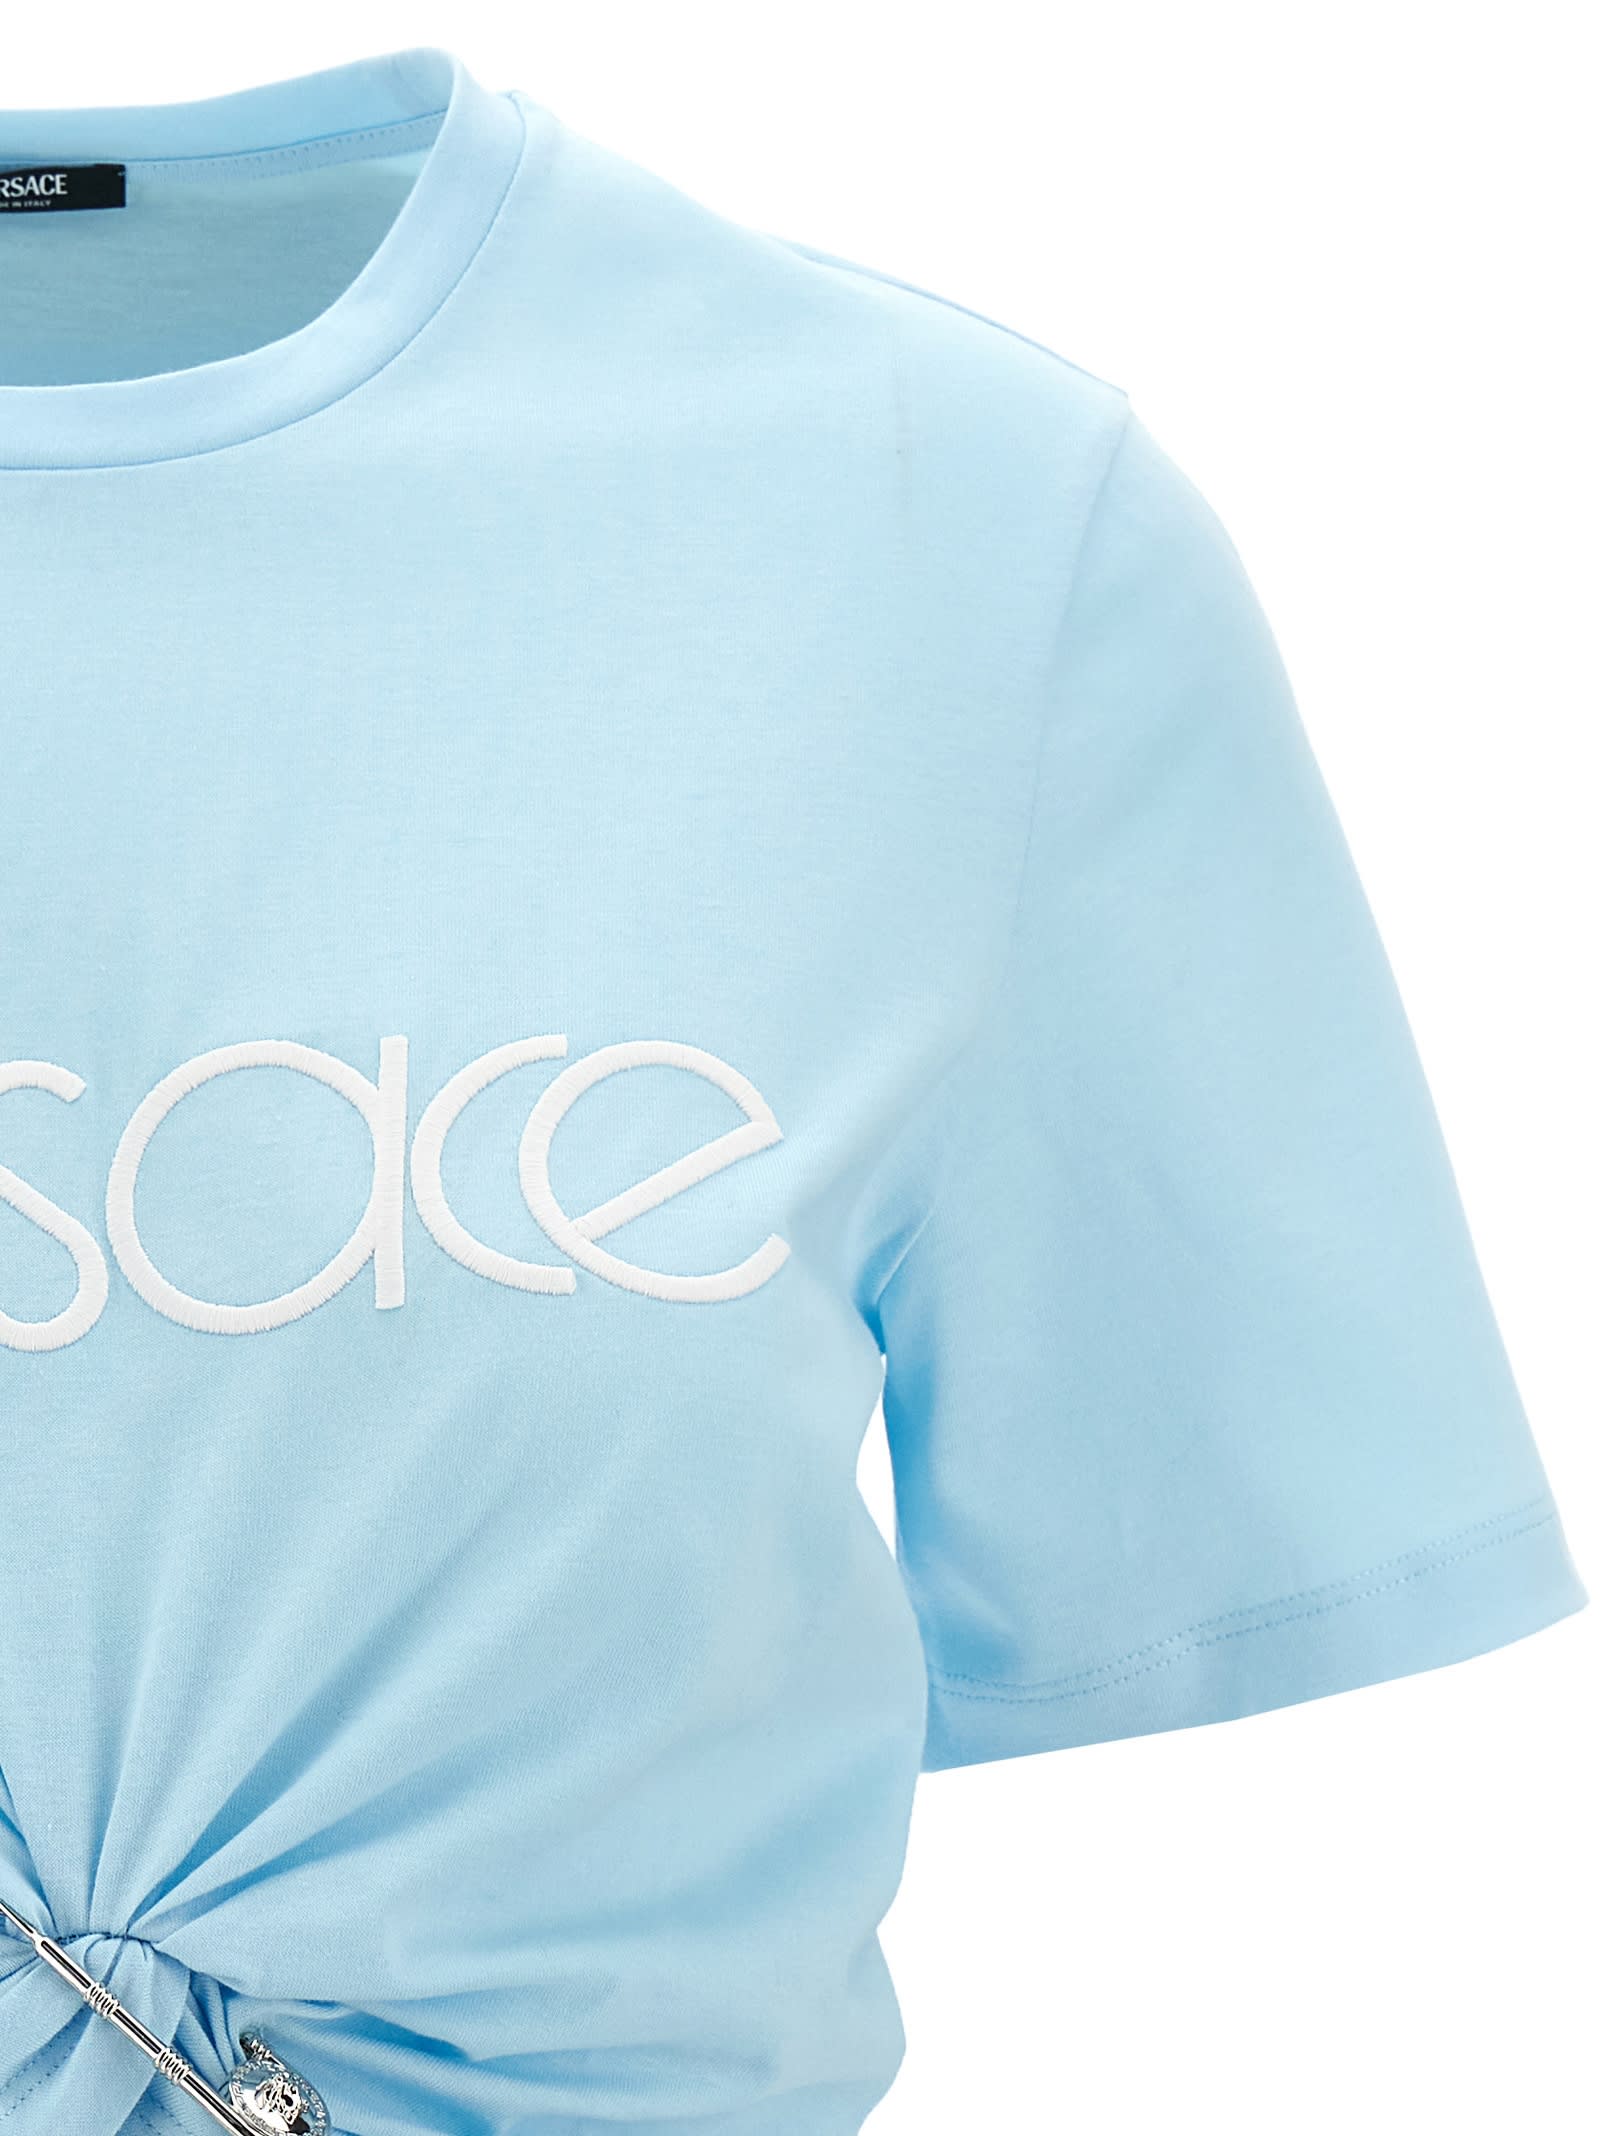 Shop Versace Logo Crop T-shirt In Light Blue